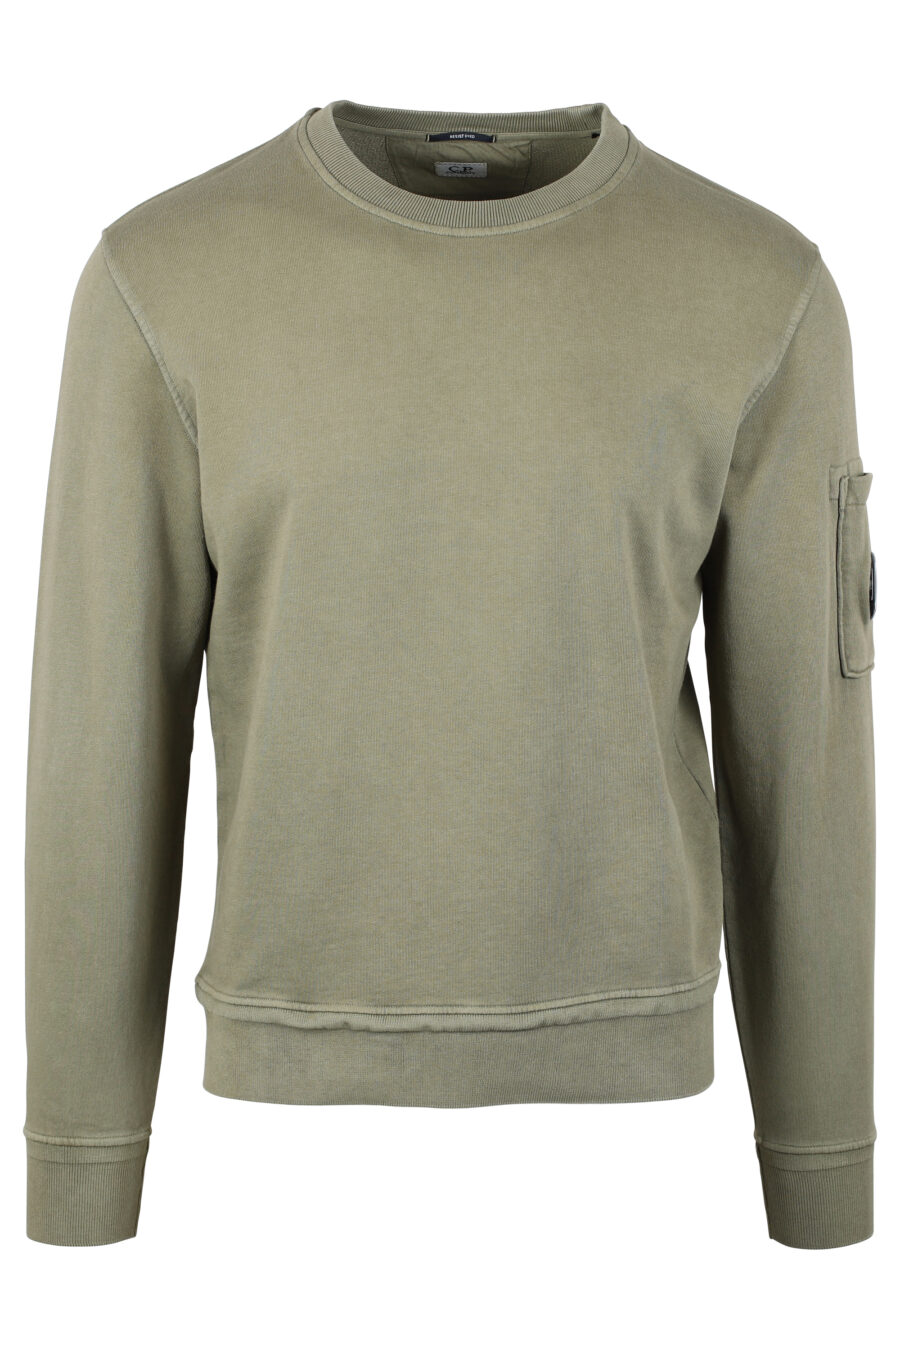 Sweat-shirt vert militaire avec doublure en polaire et mini logo circulaire - IMG 4670